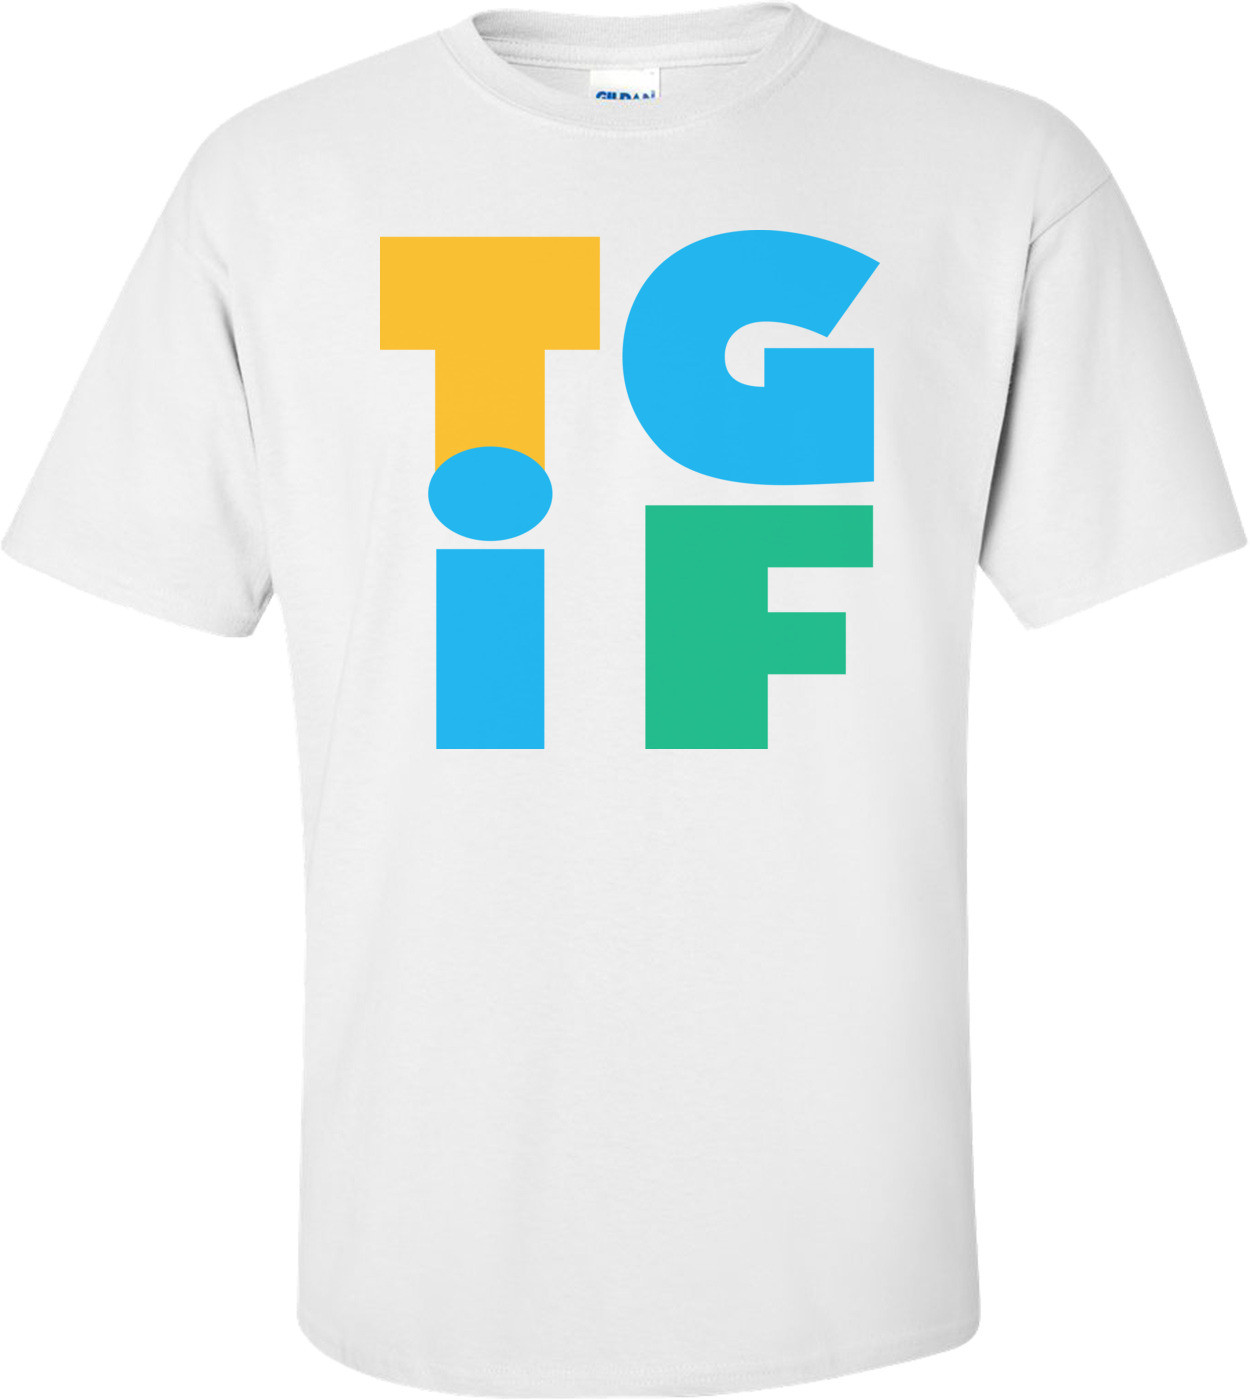 TGIF T-shirt